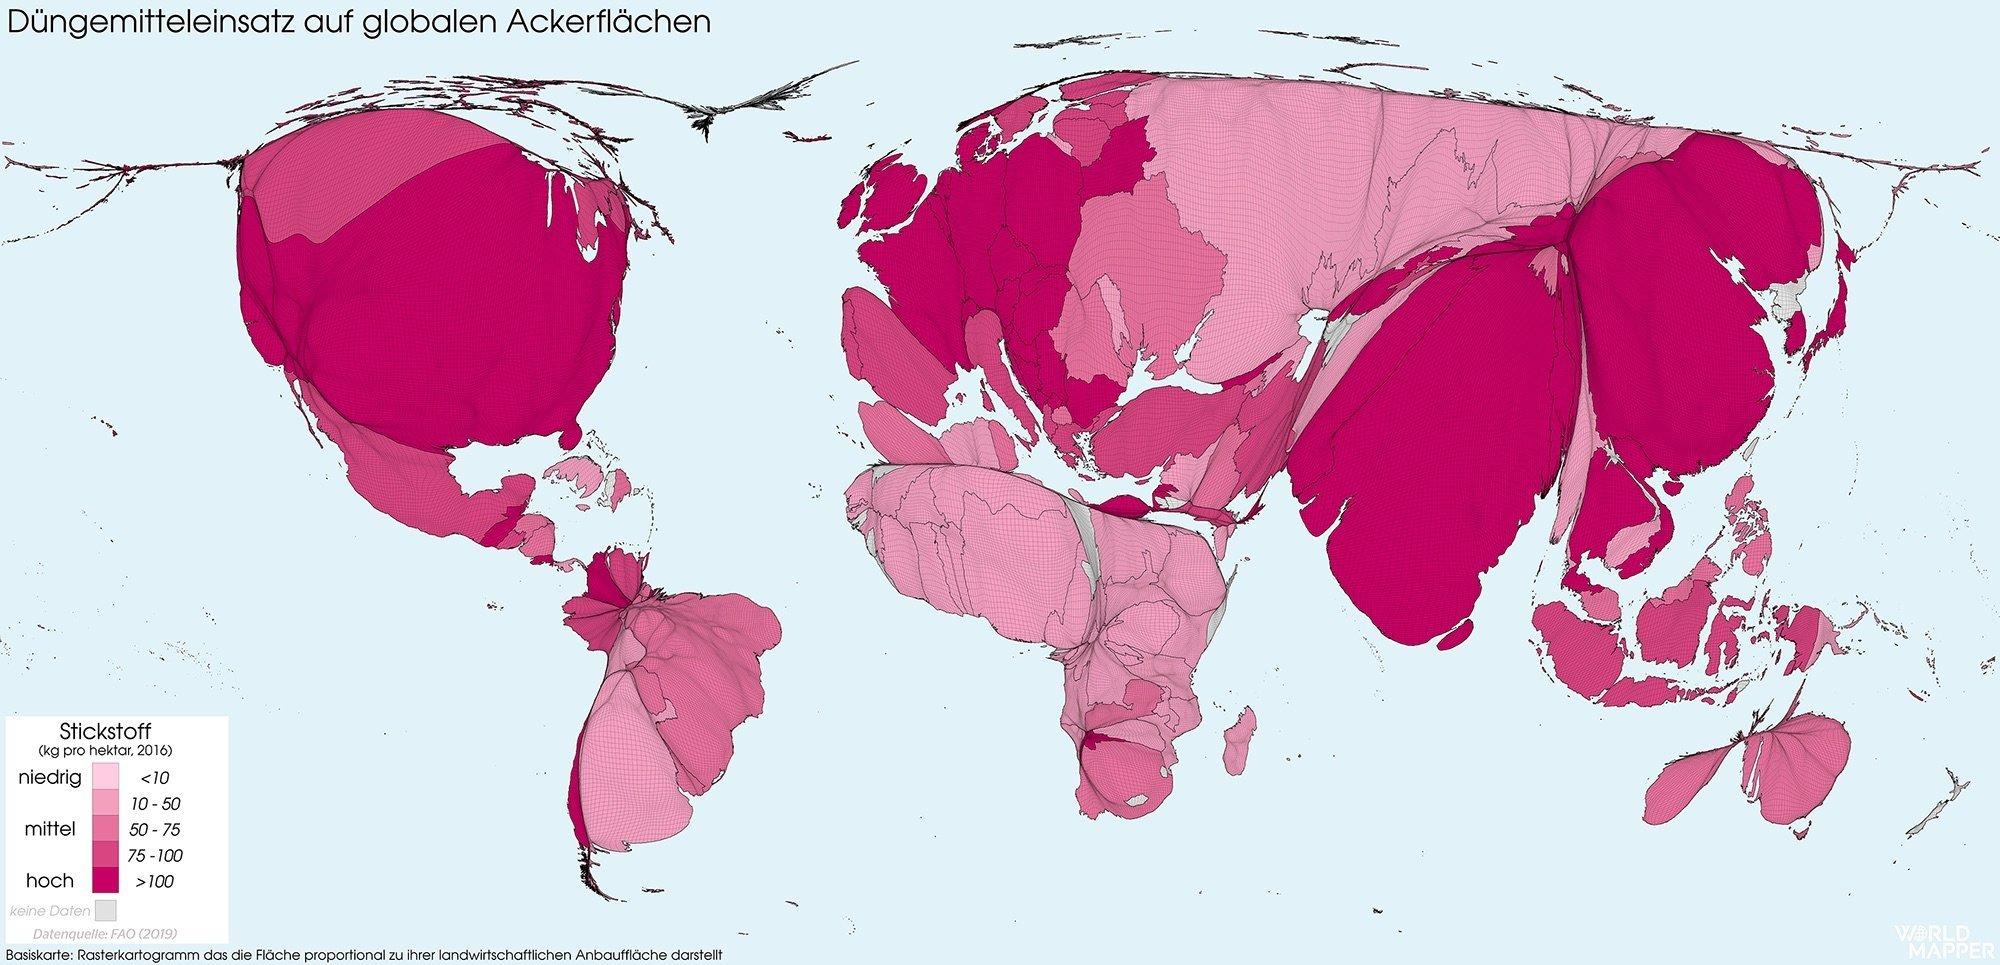 Diese Karte zeigt den Einsatz von Stickstoffdünger pro Hektar weltweit. Die Größe der Länder ist relativ zur Agrarfläche variiert.